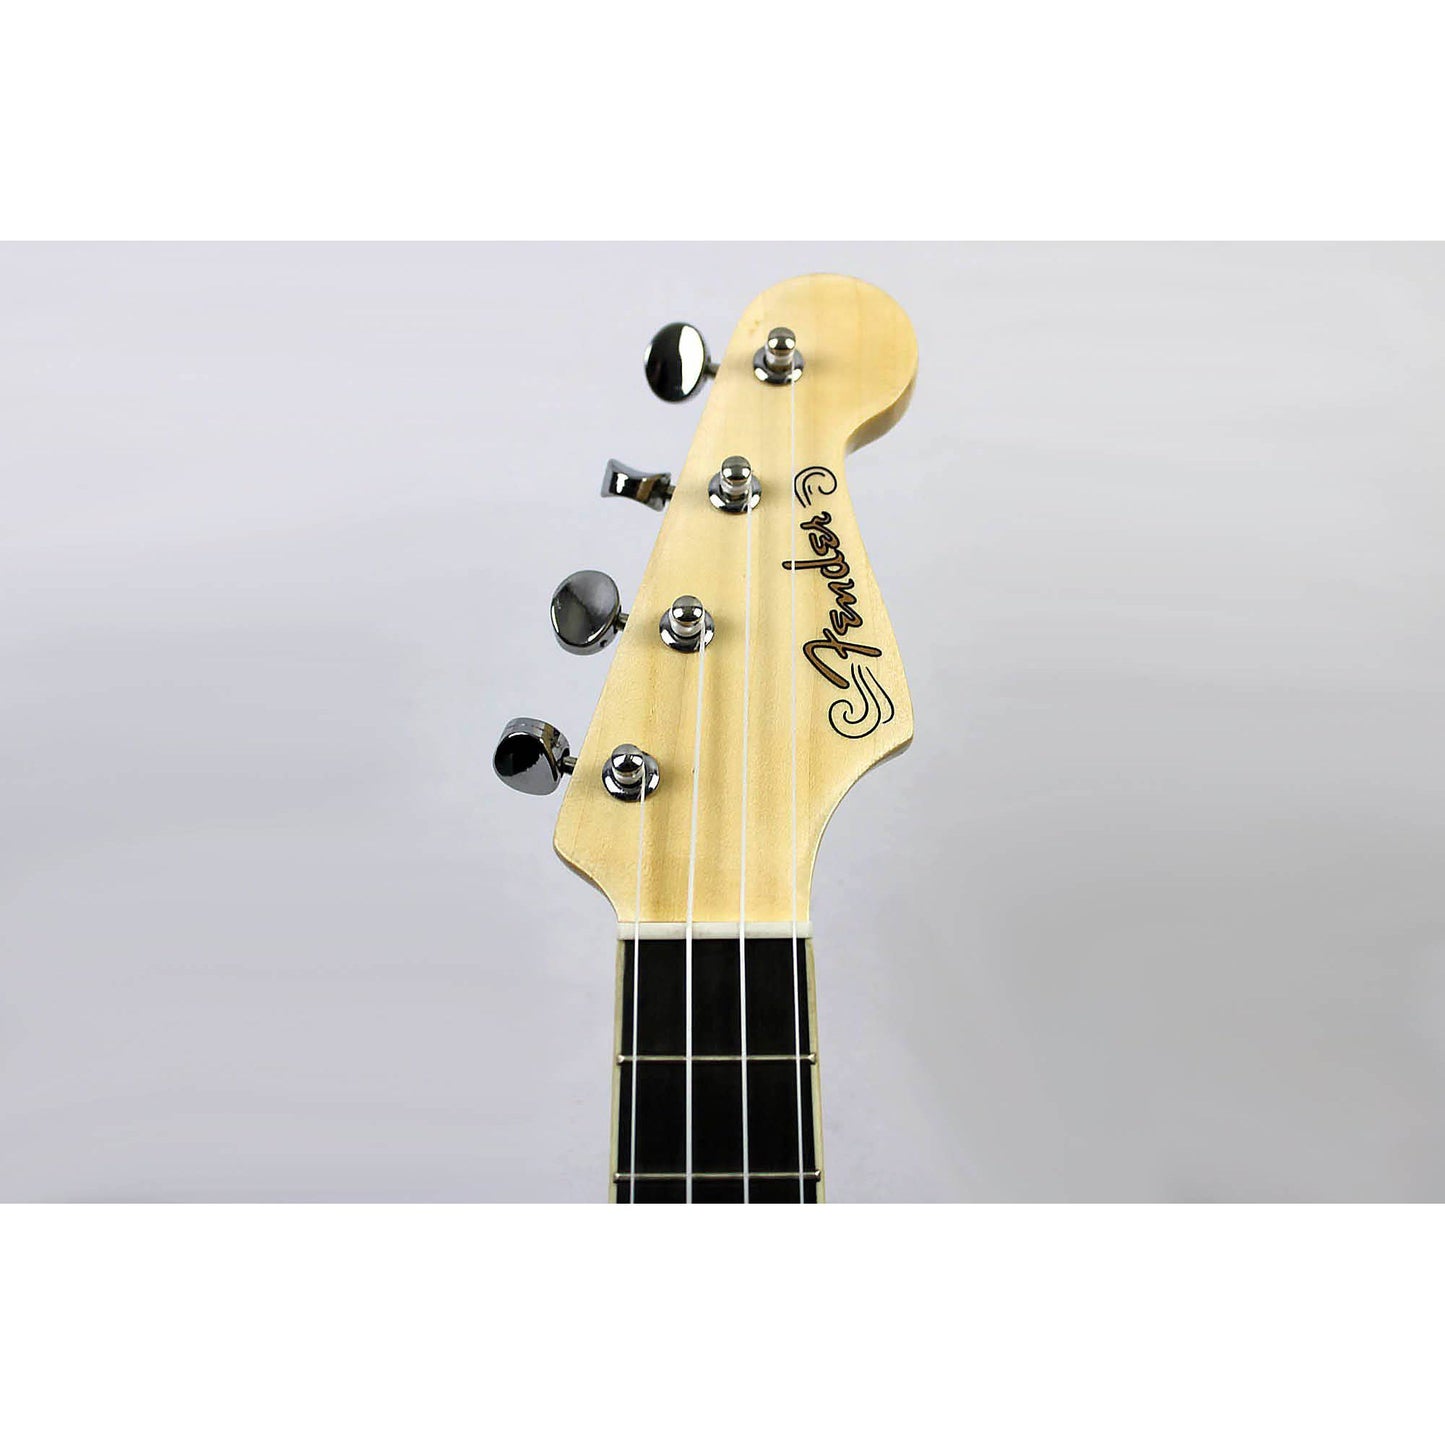 Fender Fullerton Strat Uke - Black - Leitz Music-885978381814-0971653106